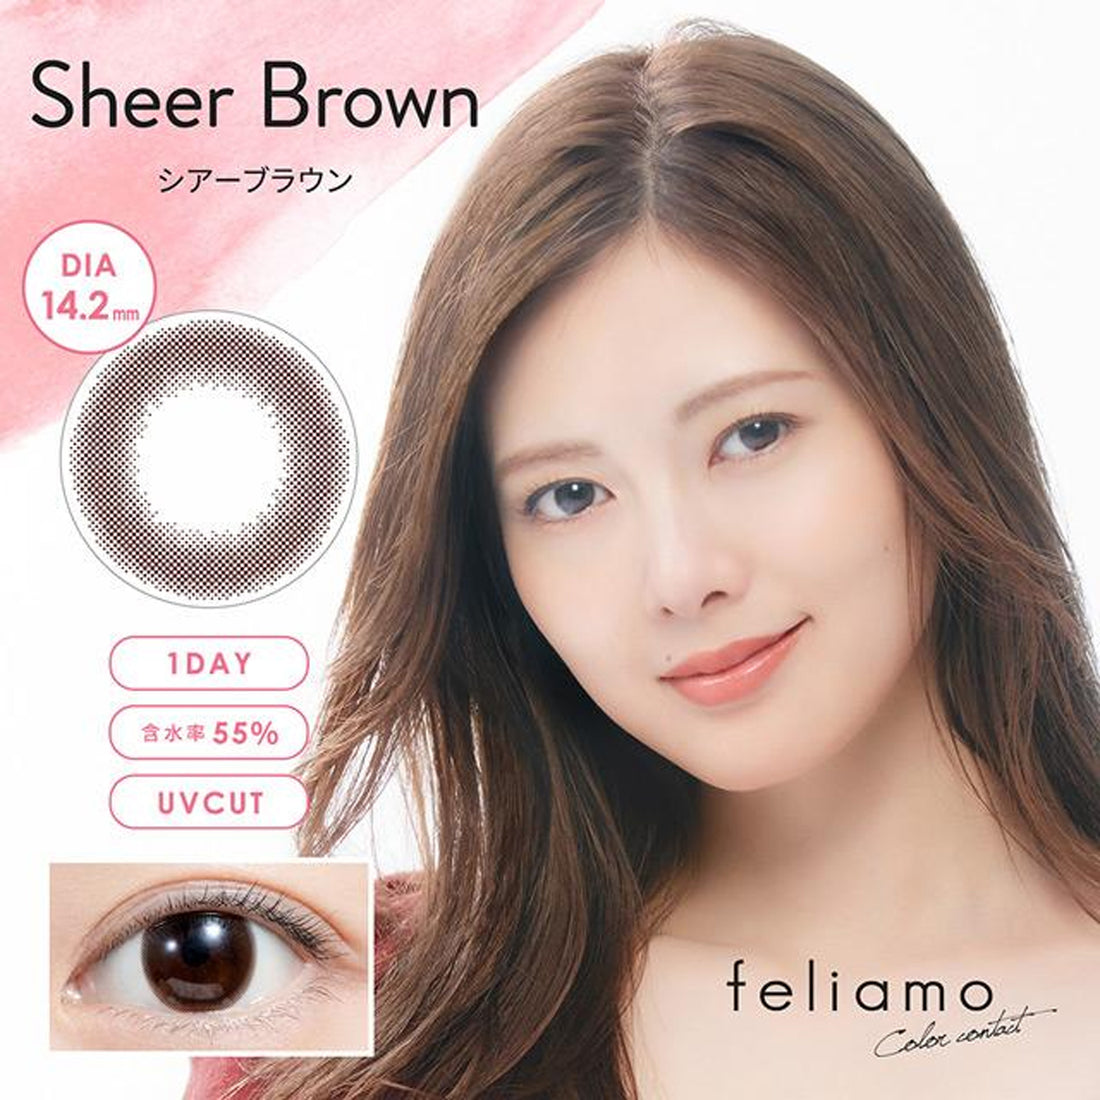 Feliamo Daily Contact Lenses-Sheer Brown 10lenses